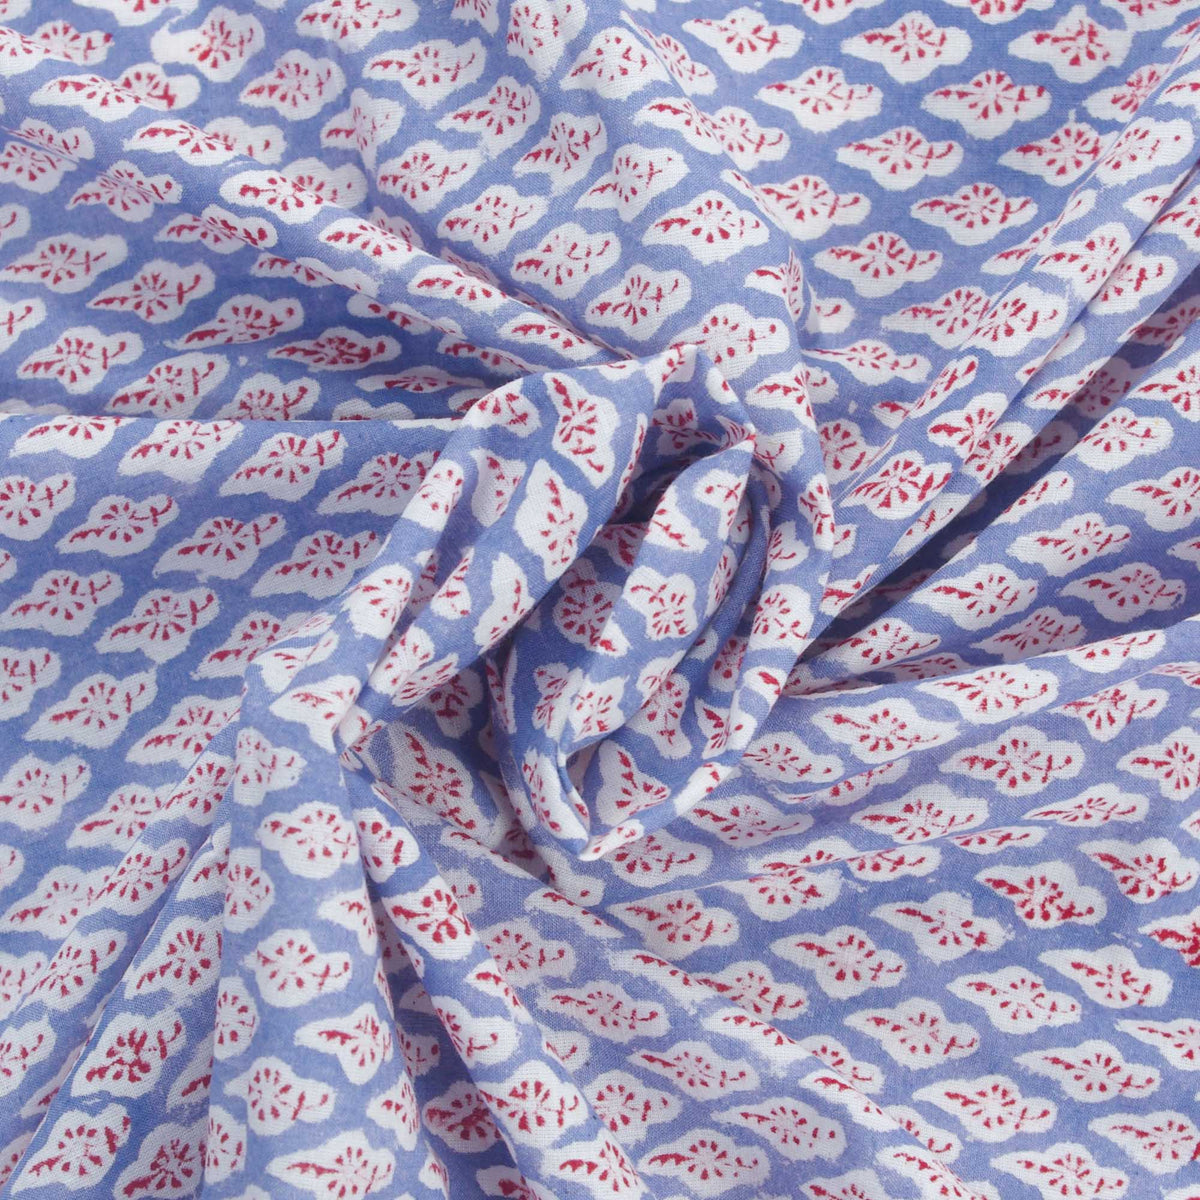 Indischer Handblock, 100 % Baumwolle, rotes Motiv auf lila, grauem Damenkleid, Stoff, Design 122